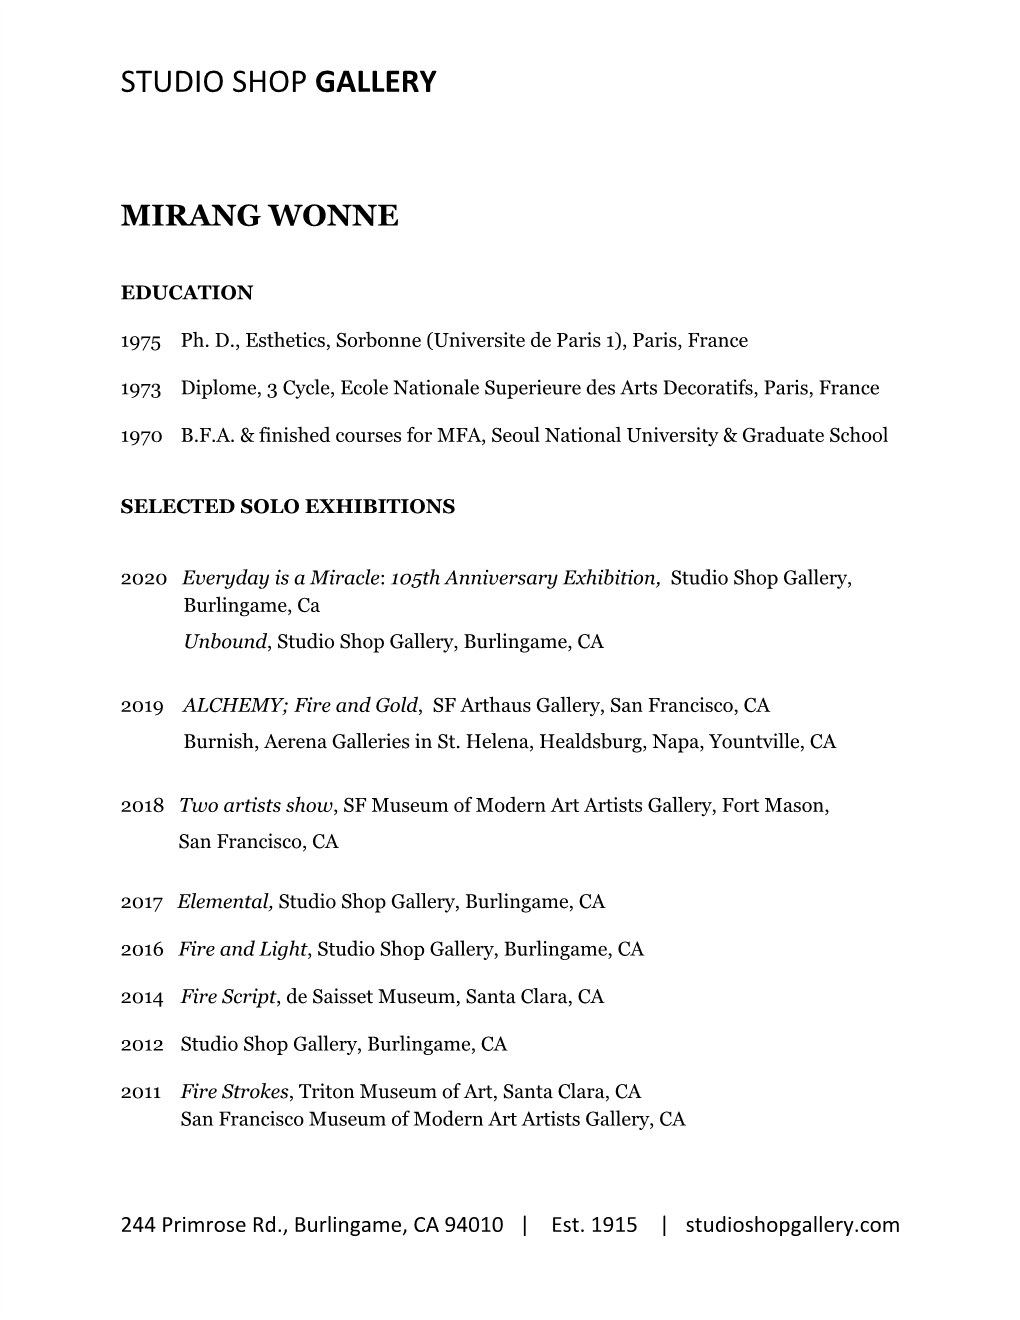 Download Mirang Wonne